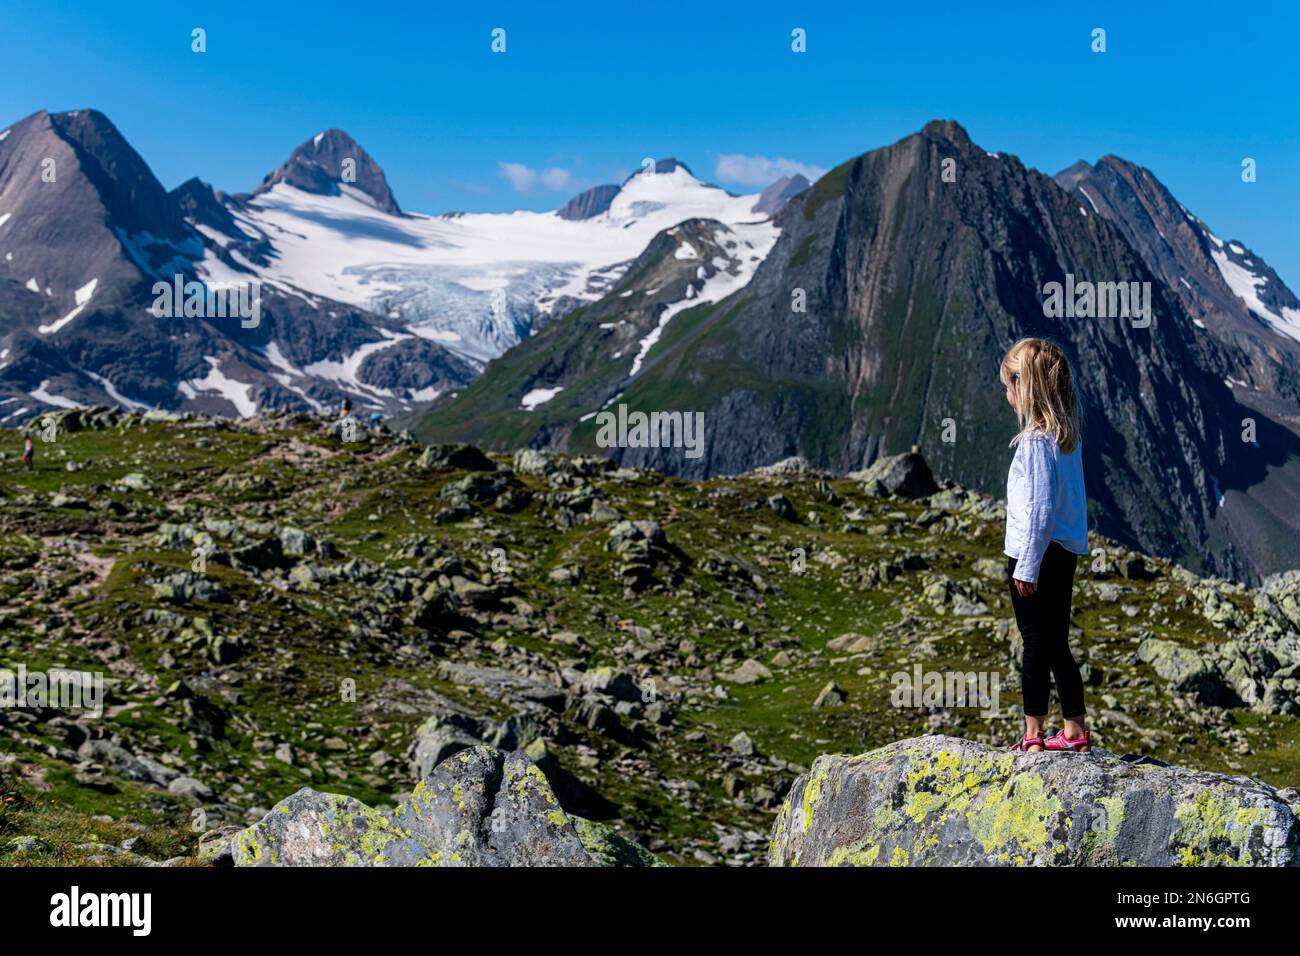 Jeune fille posant devant les Alpes suisses, col de Nufenen, Suisse Banque D'Images